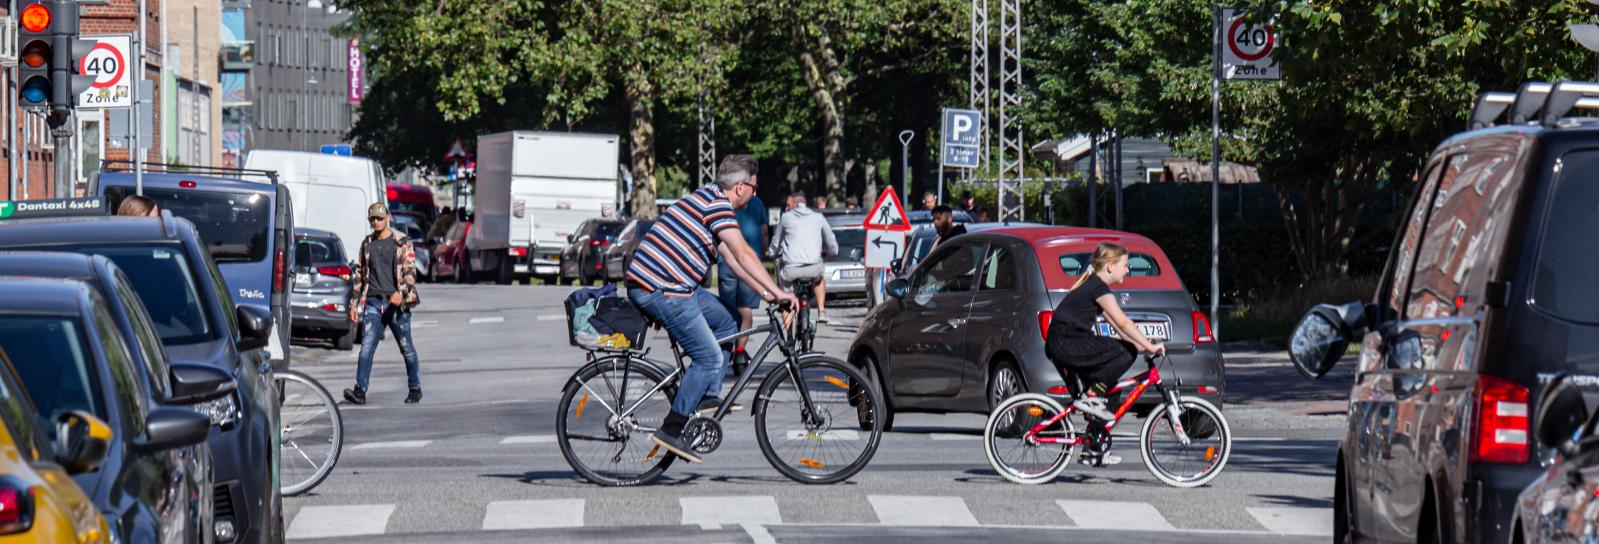 Cyklister og parkerede biler